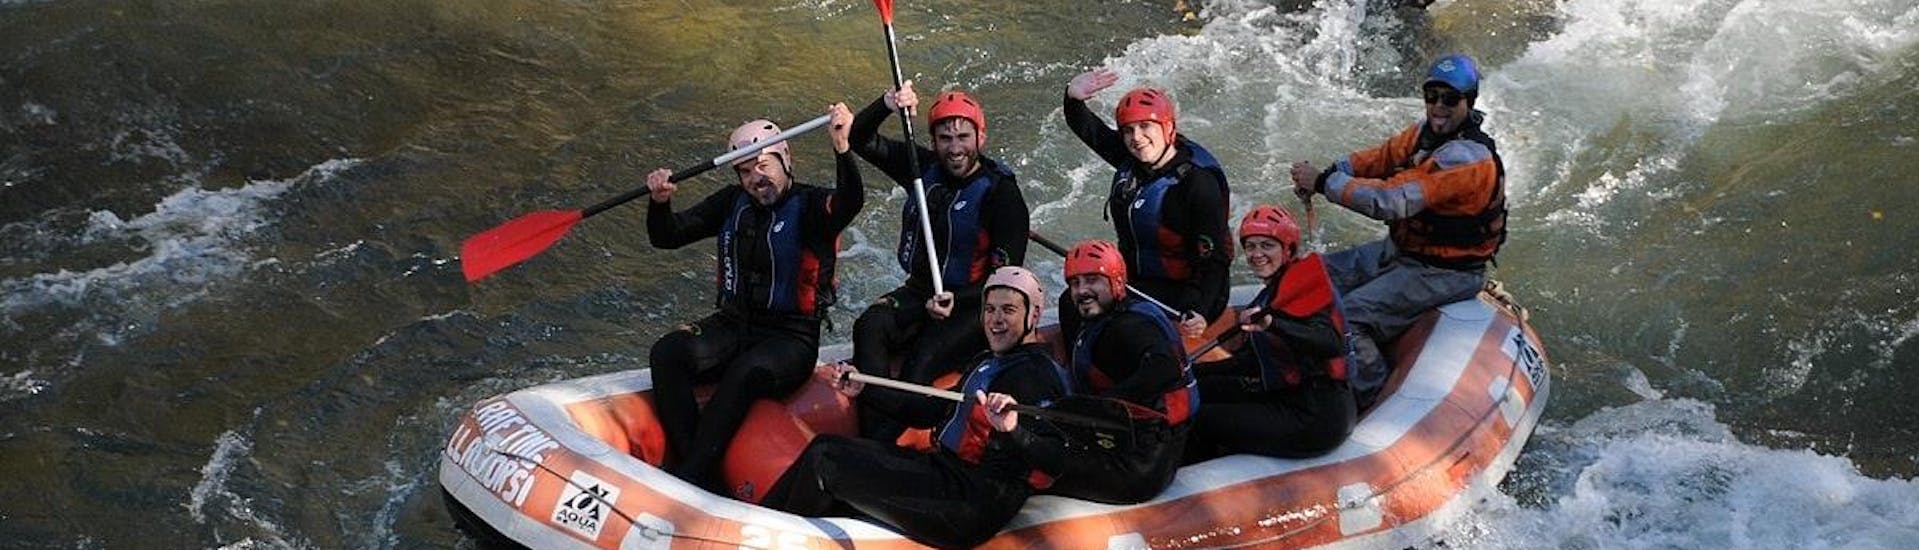 Rafting facile a Llavorsí - Noguera Pallaresa.